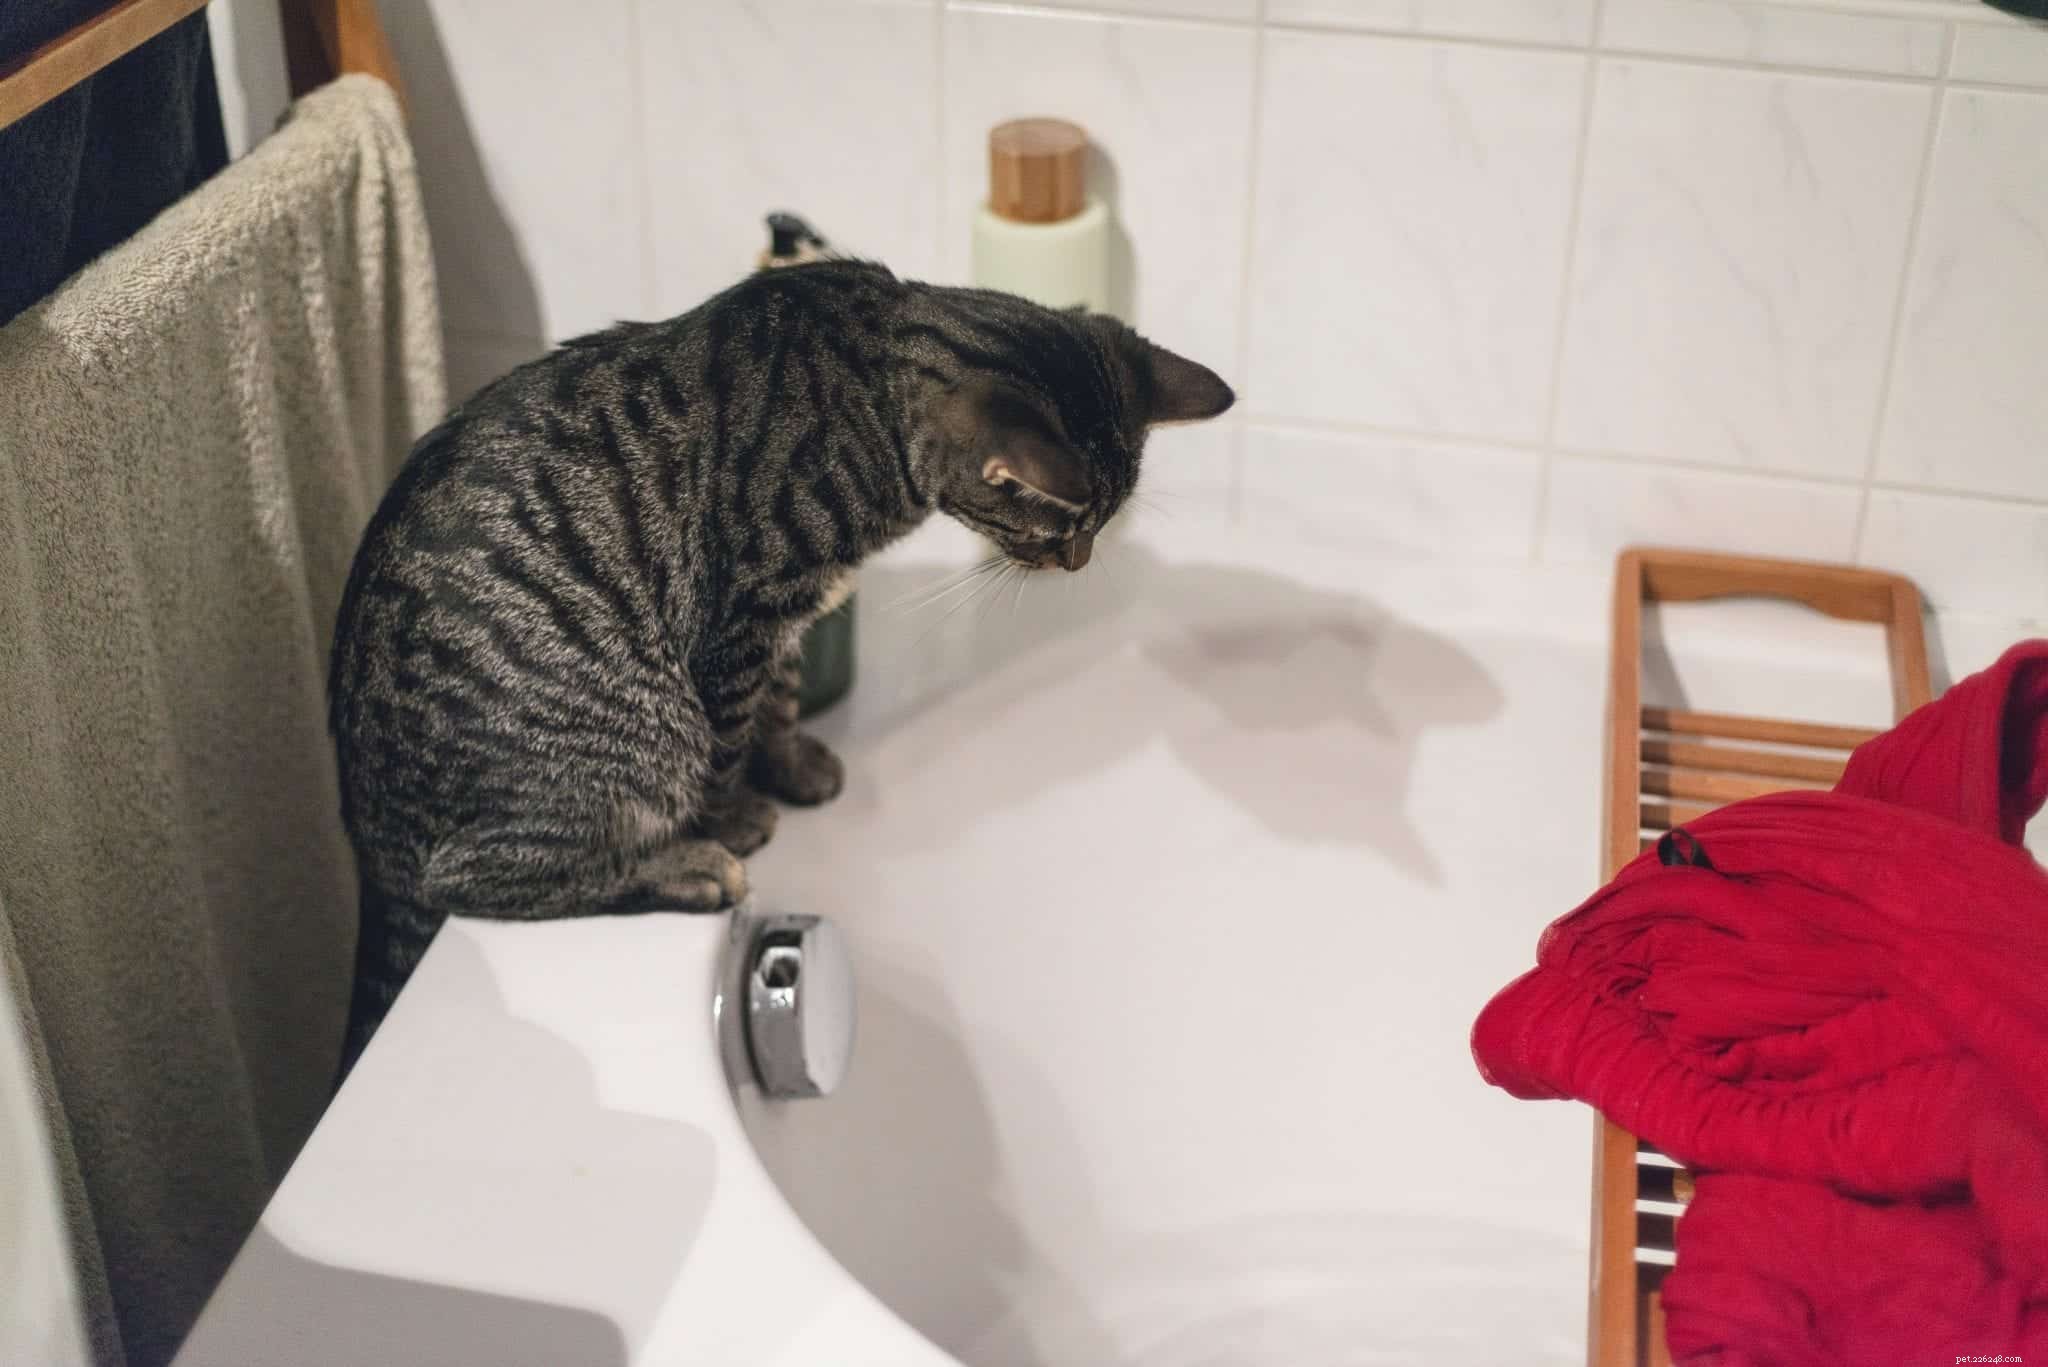 Le guide ultime pour donner un bain à votre chat SANS se faire rayer